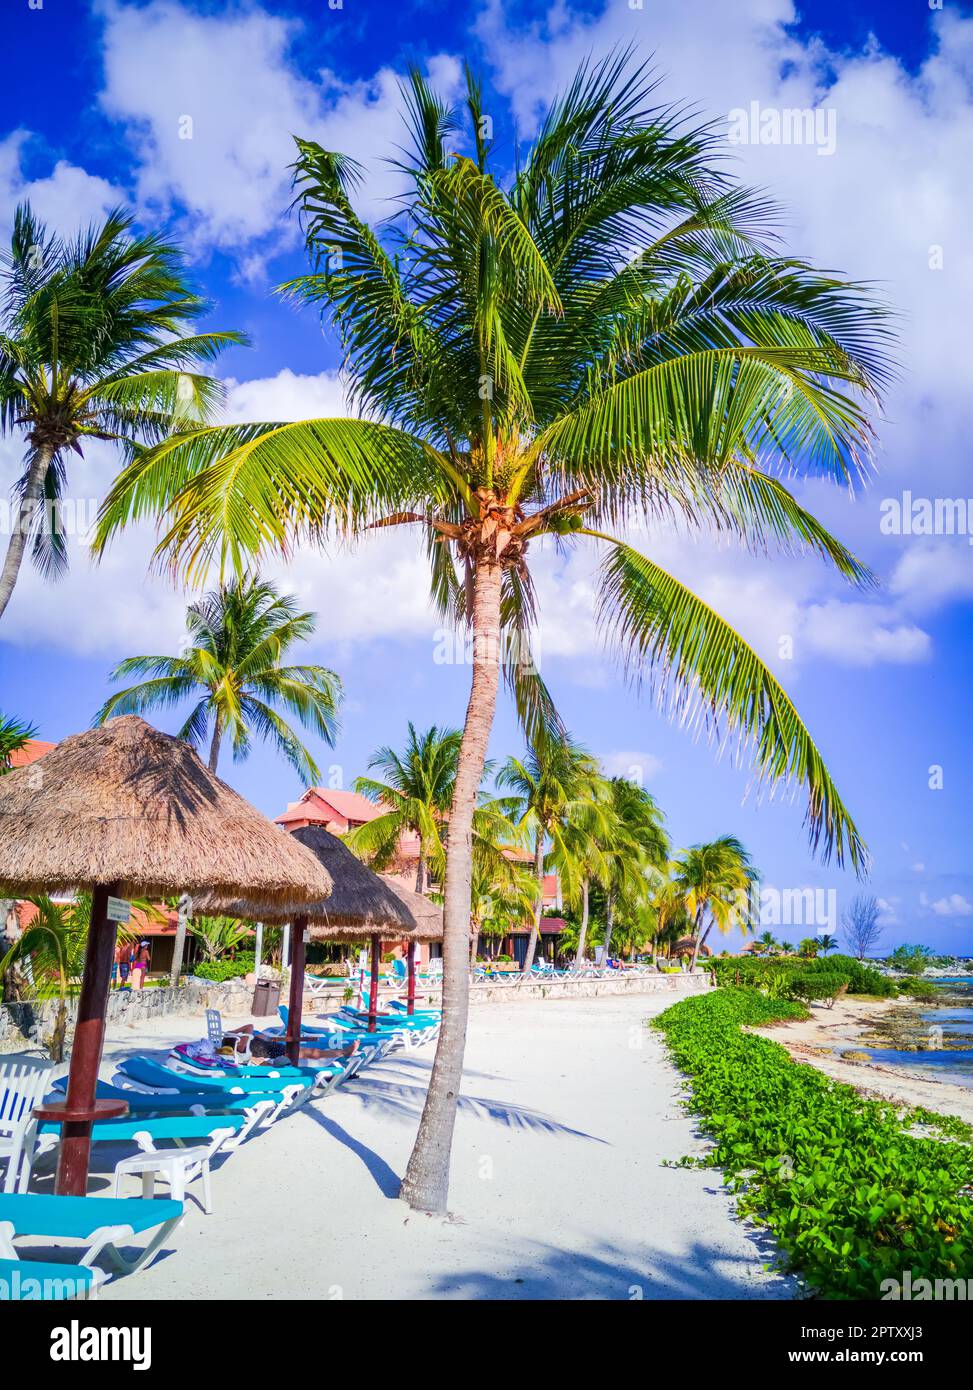 Puerto Aventuras, Mexique. Petite station balnéaire située dans la Riviera Maya, connue pour ses belles plages et son port de plaisance, Cancun. Banque D'Images